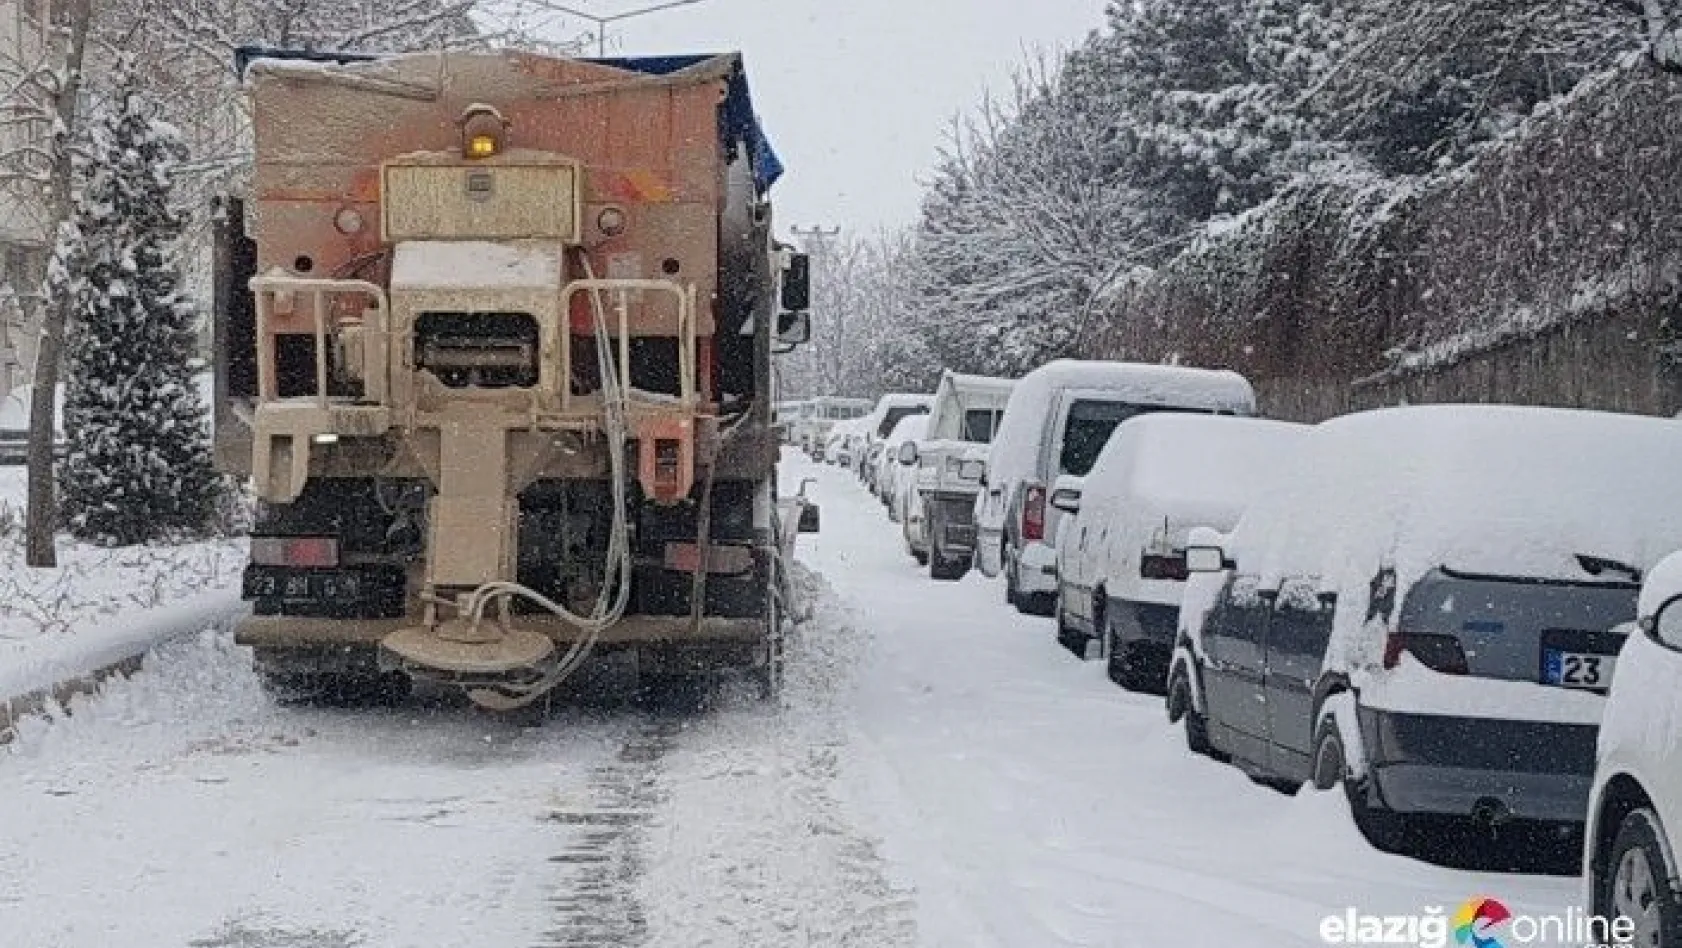 Elazığ'da karla mücadele devam ediyor